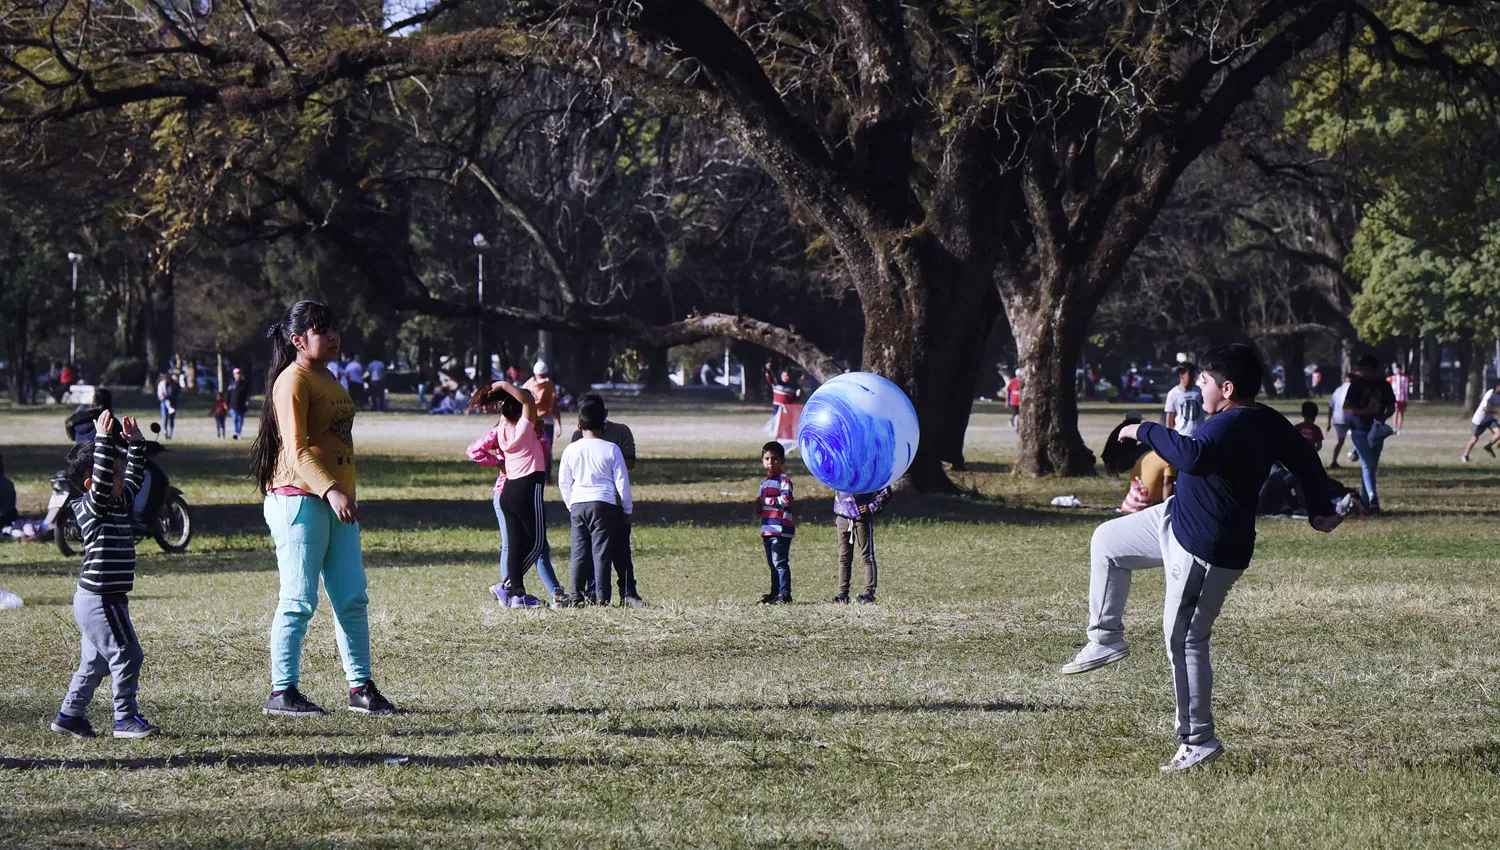 CON ABRIGO. El domingo miles de tucumanos aprovechan para pasar tiempo libre en el parque 9 de Julio.